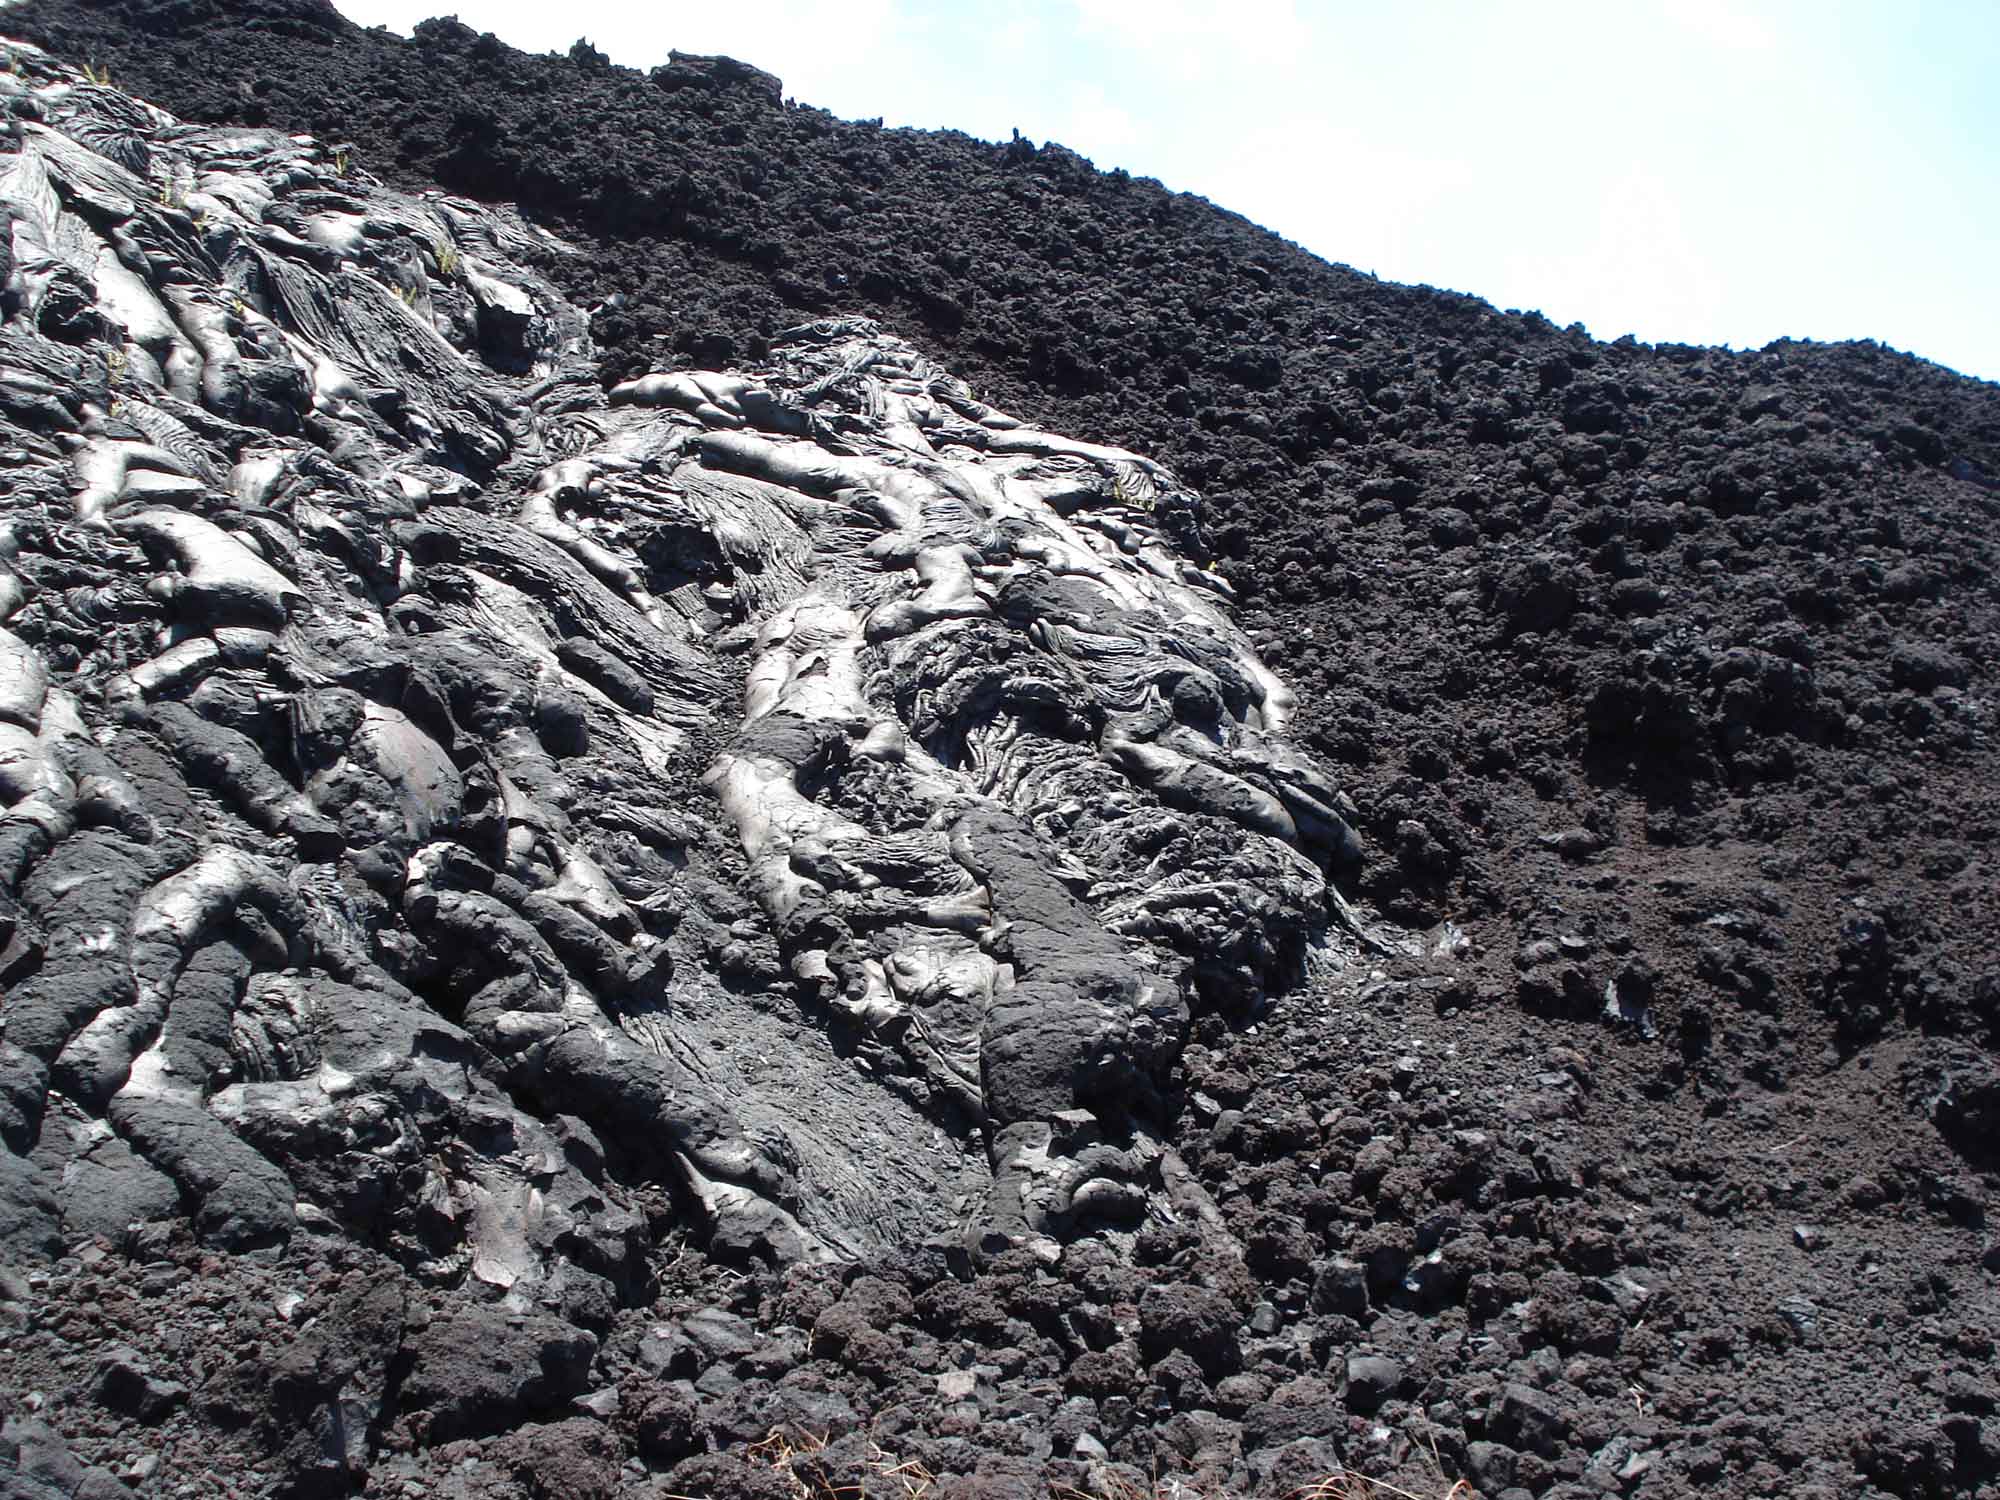 Photograph shows a pahoehoe lava flow next to a ‘a‘a flow.